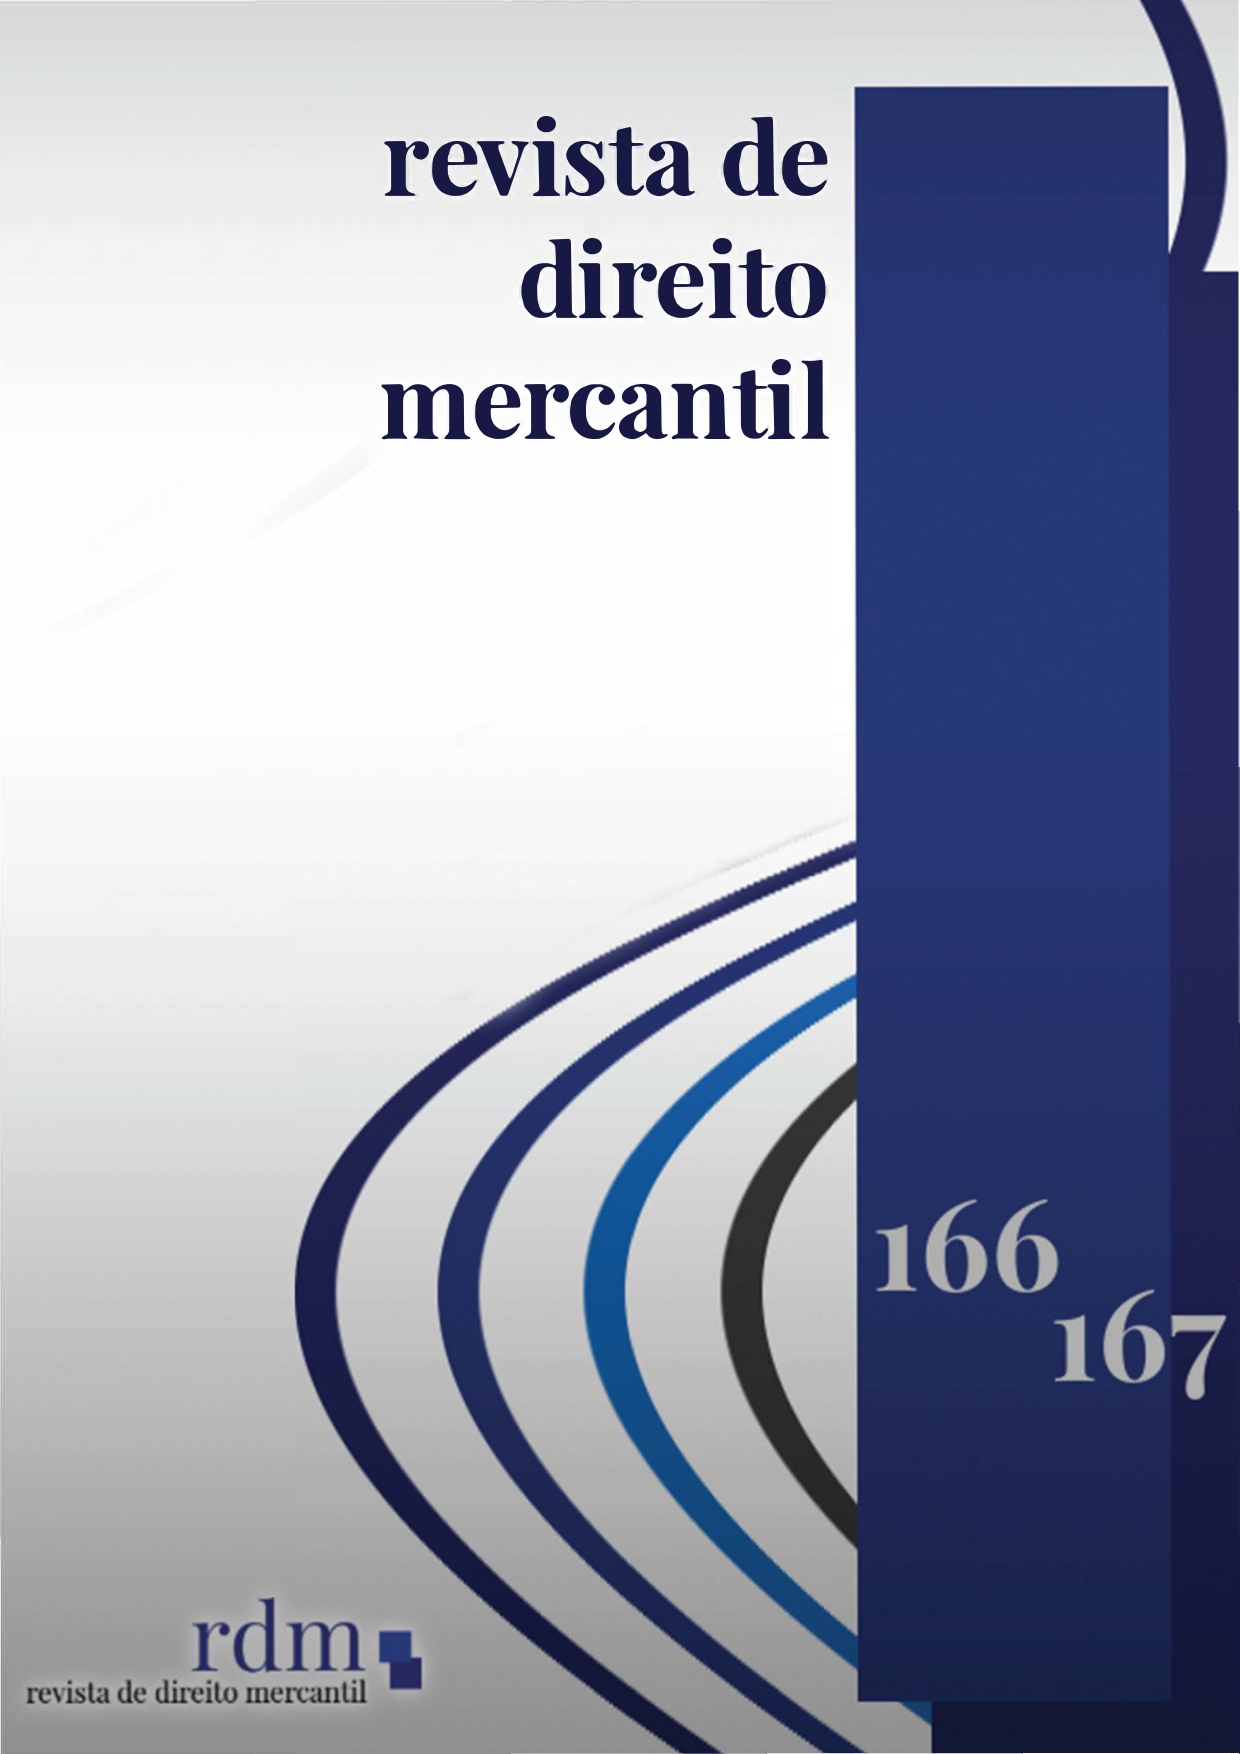 					Visualizar n. 166/167 (2014): Revista de Direito Mercantil, Industrial, Econômico e Financeiro
				